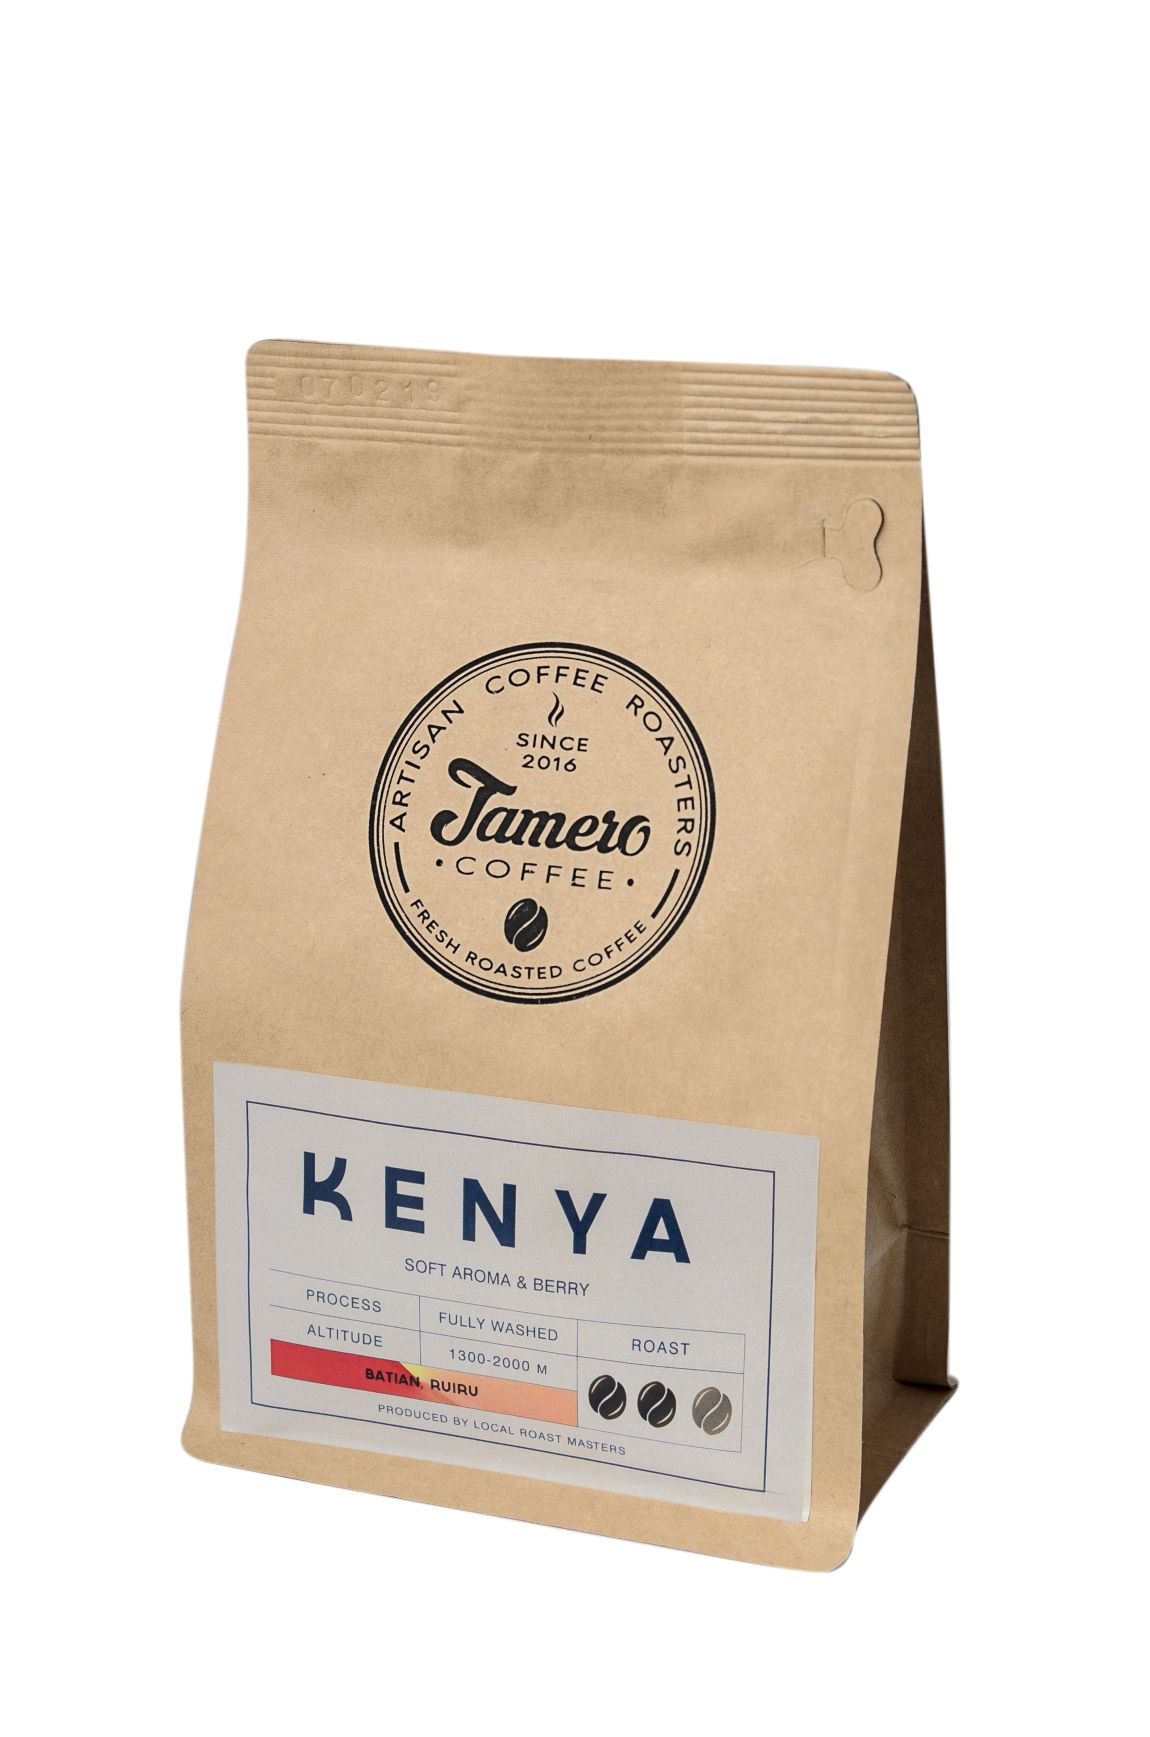 Кофе в зерне свежеобжаренный Jamero Арабика Кения 225 г